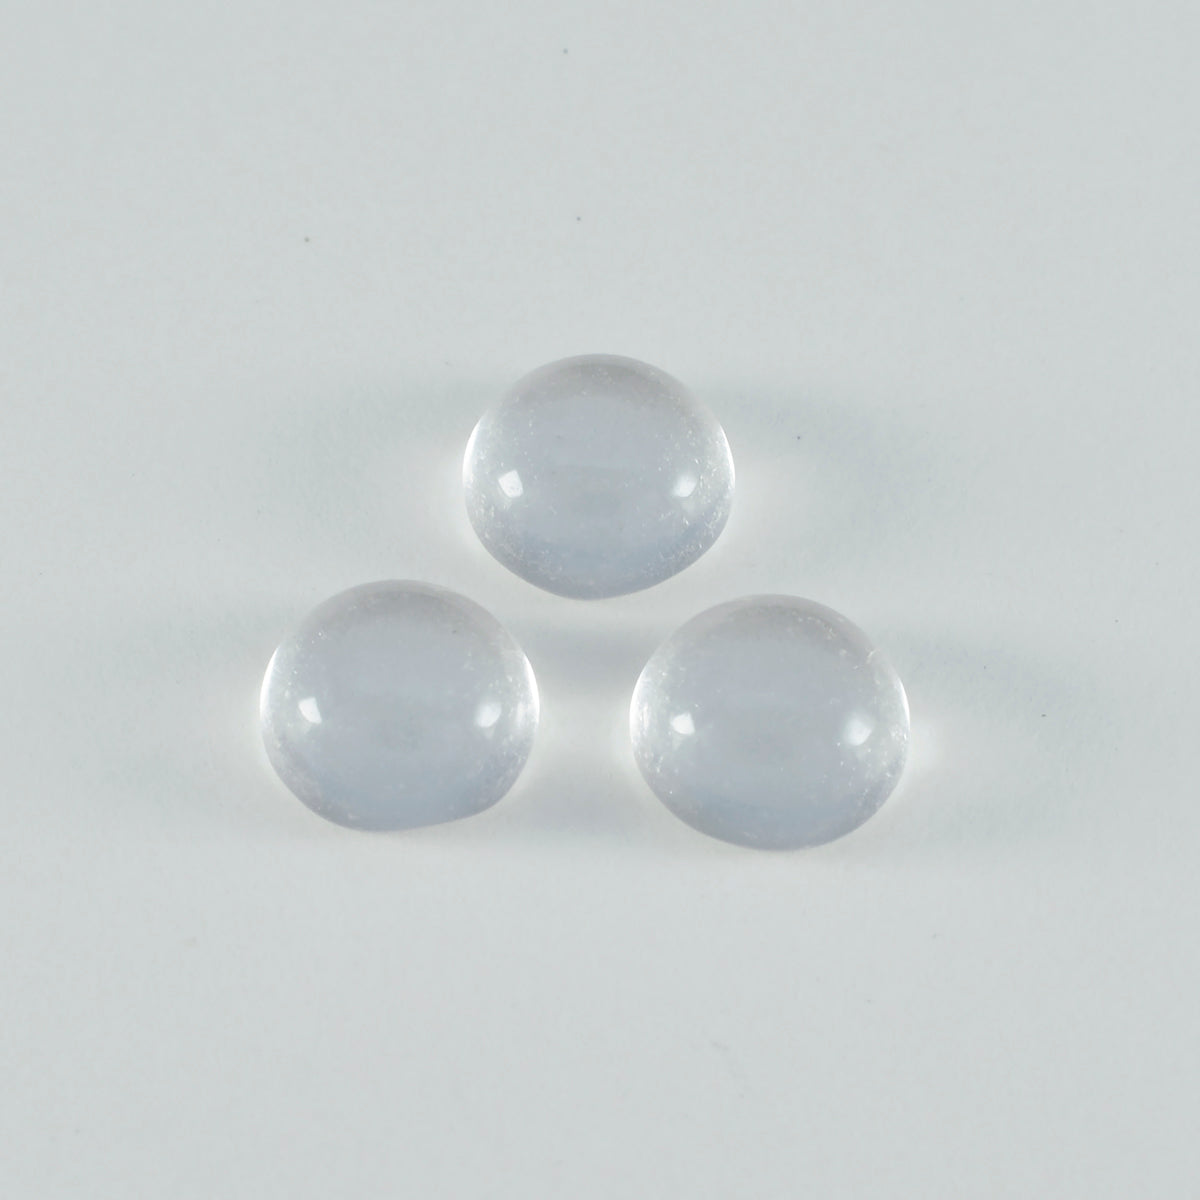 Riyogems 1 pc cabochon de quartz cristal blanc 7x7 mm forme ronde a + 1 gemme de qualité